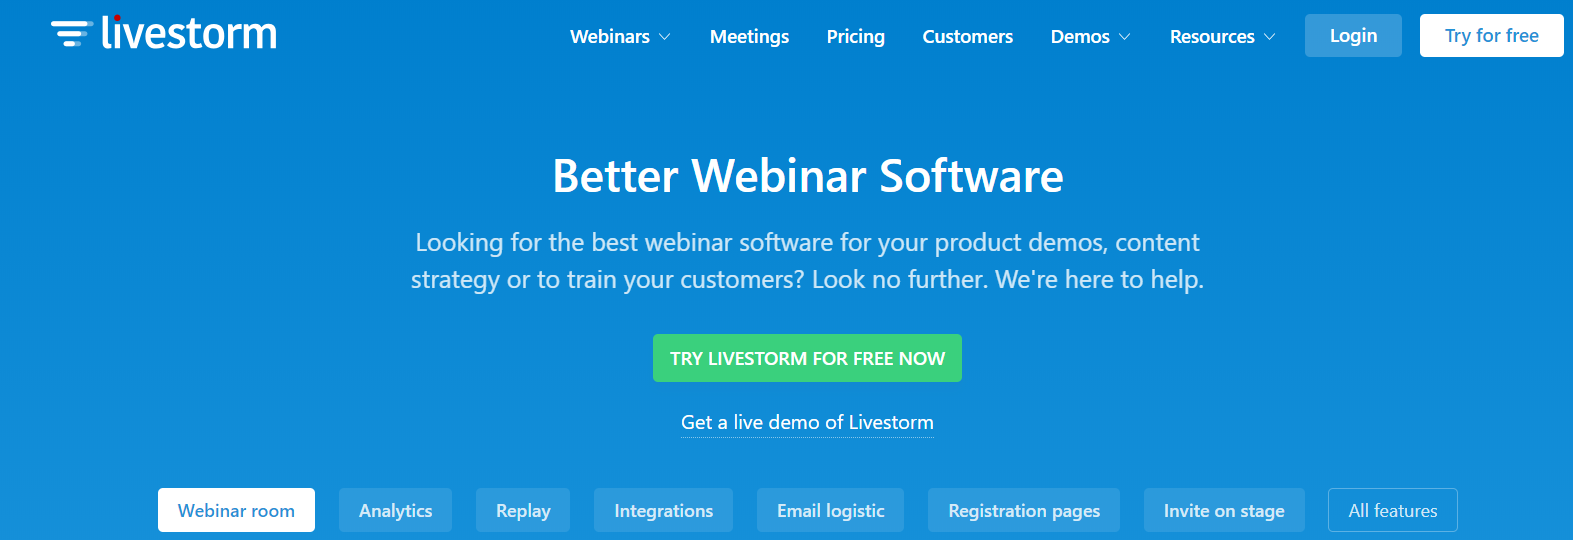 Livestorm - Miglior software per webinar